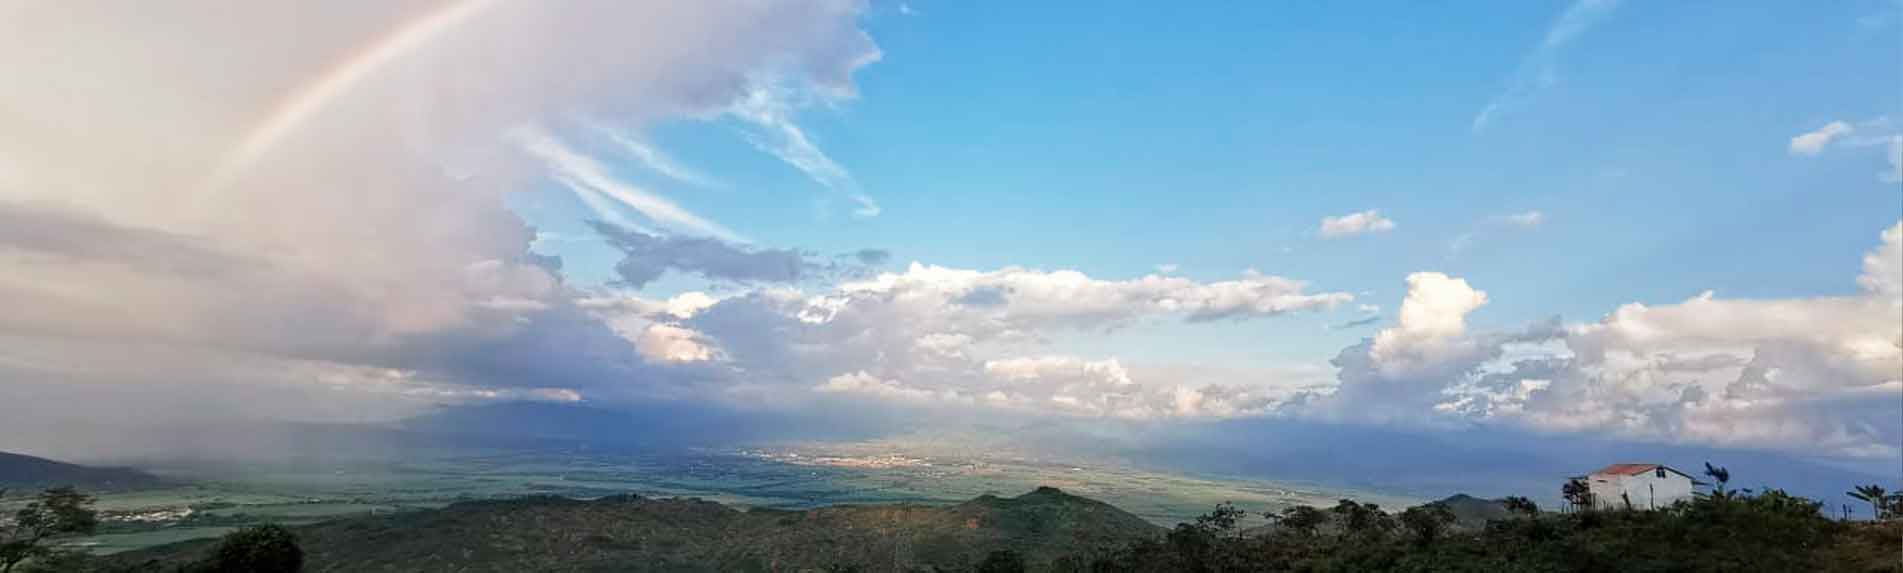 panoramica valle del cauca